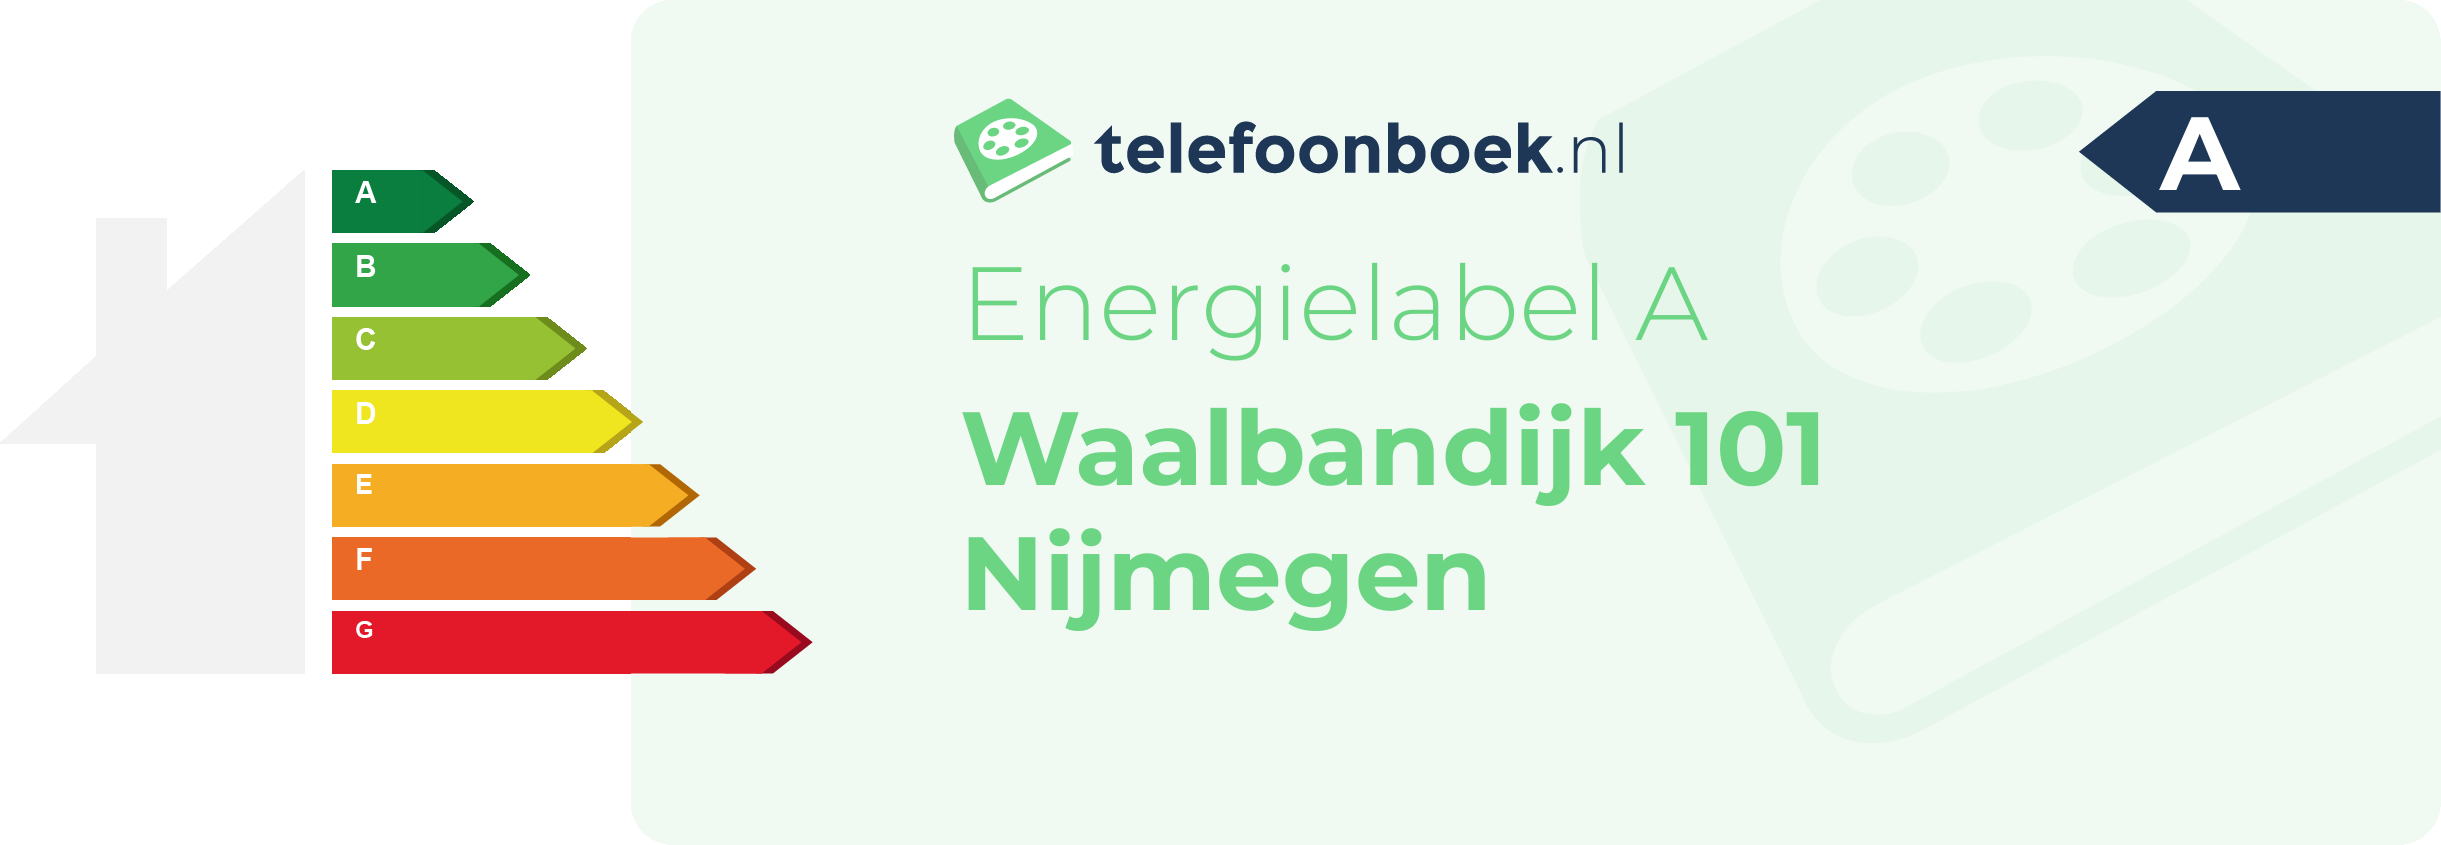 Energielabel Waalbandijk 101 Nijmegen